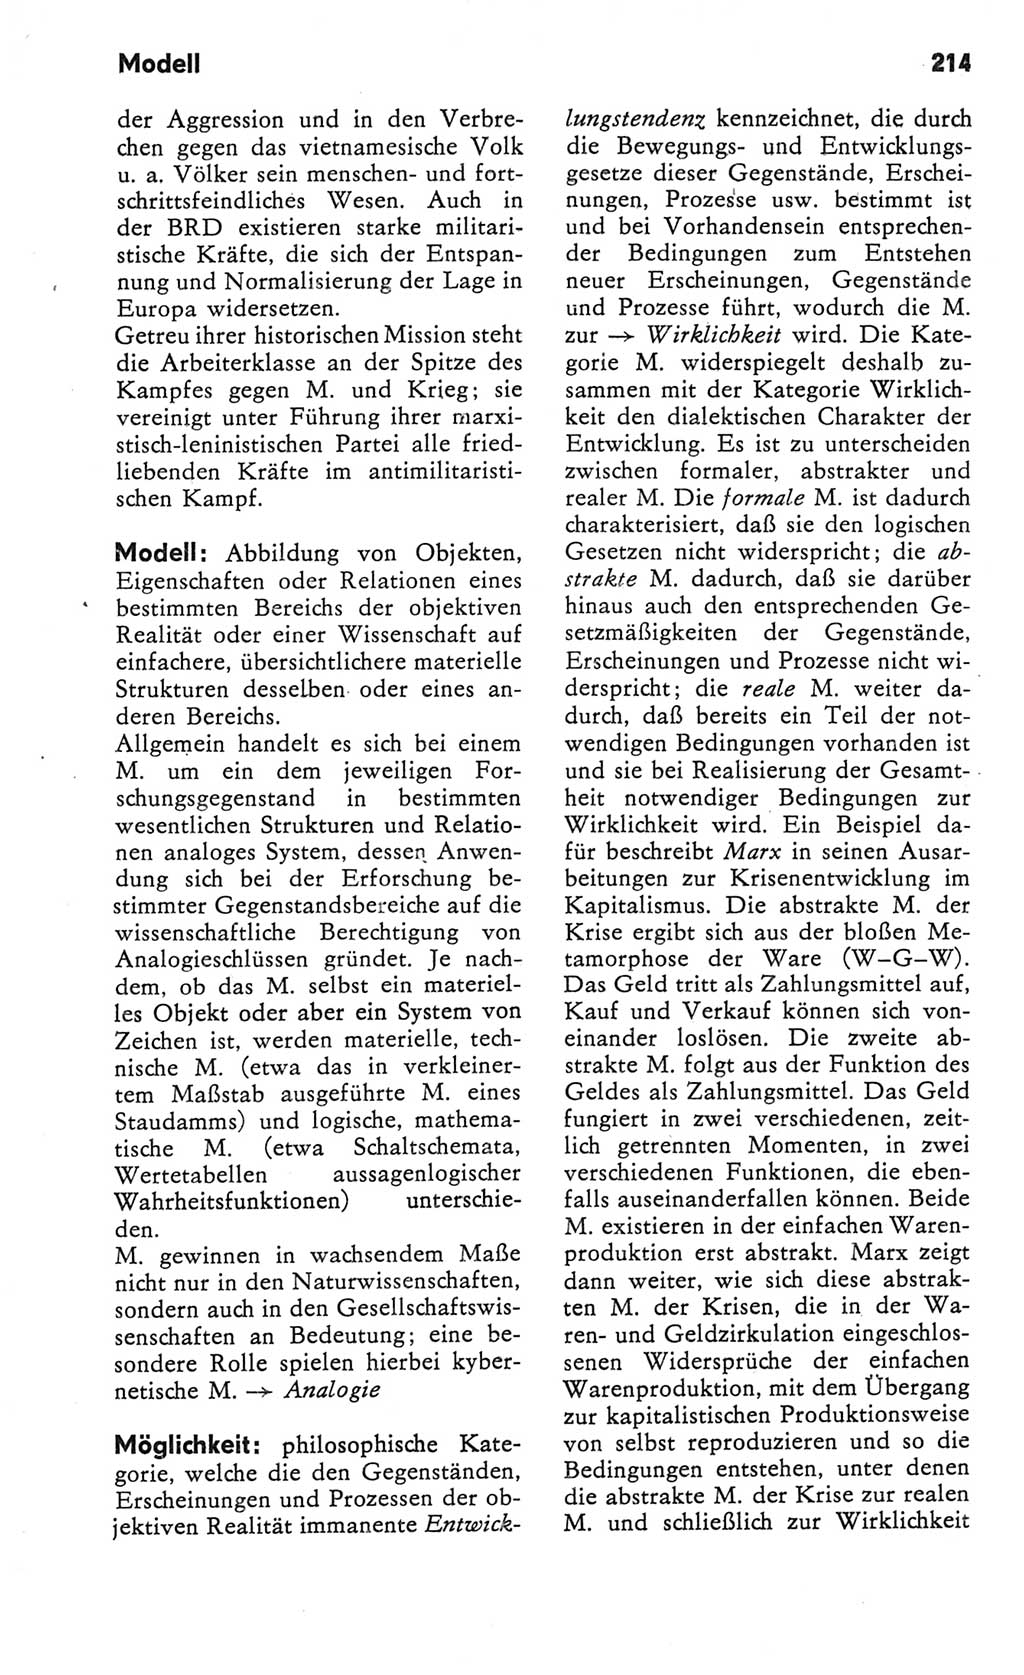 Kleines Wörterbuch der marxistisch-leninistischen Philosophie [Deutsche Demokratische Republik (DDR)] 1982, Seite 214 (Kl. Wb. ML Phil. DDR 1982, S. 214)